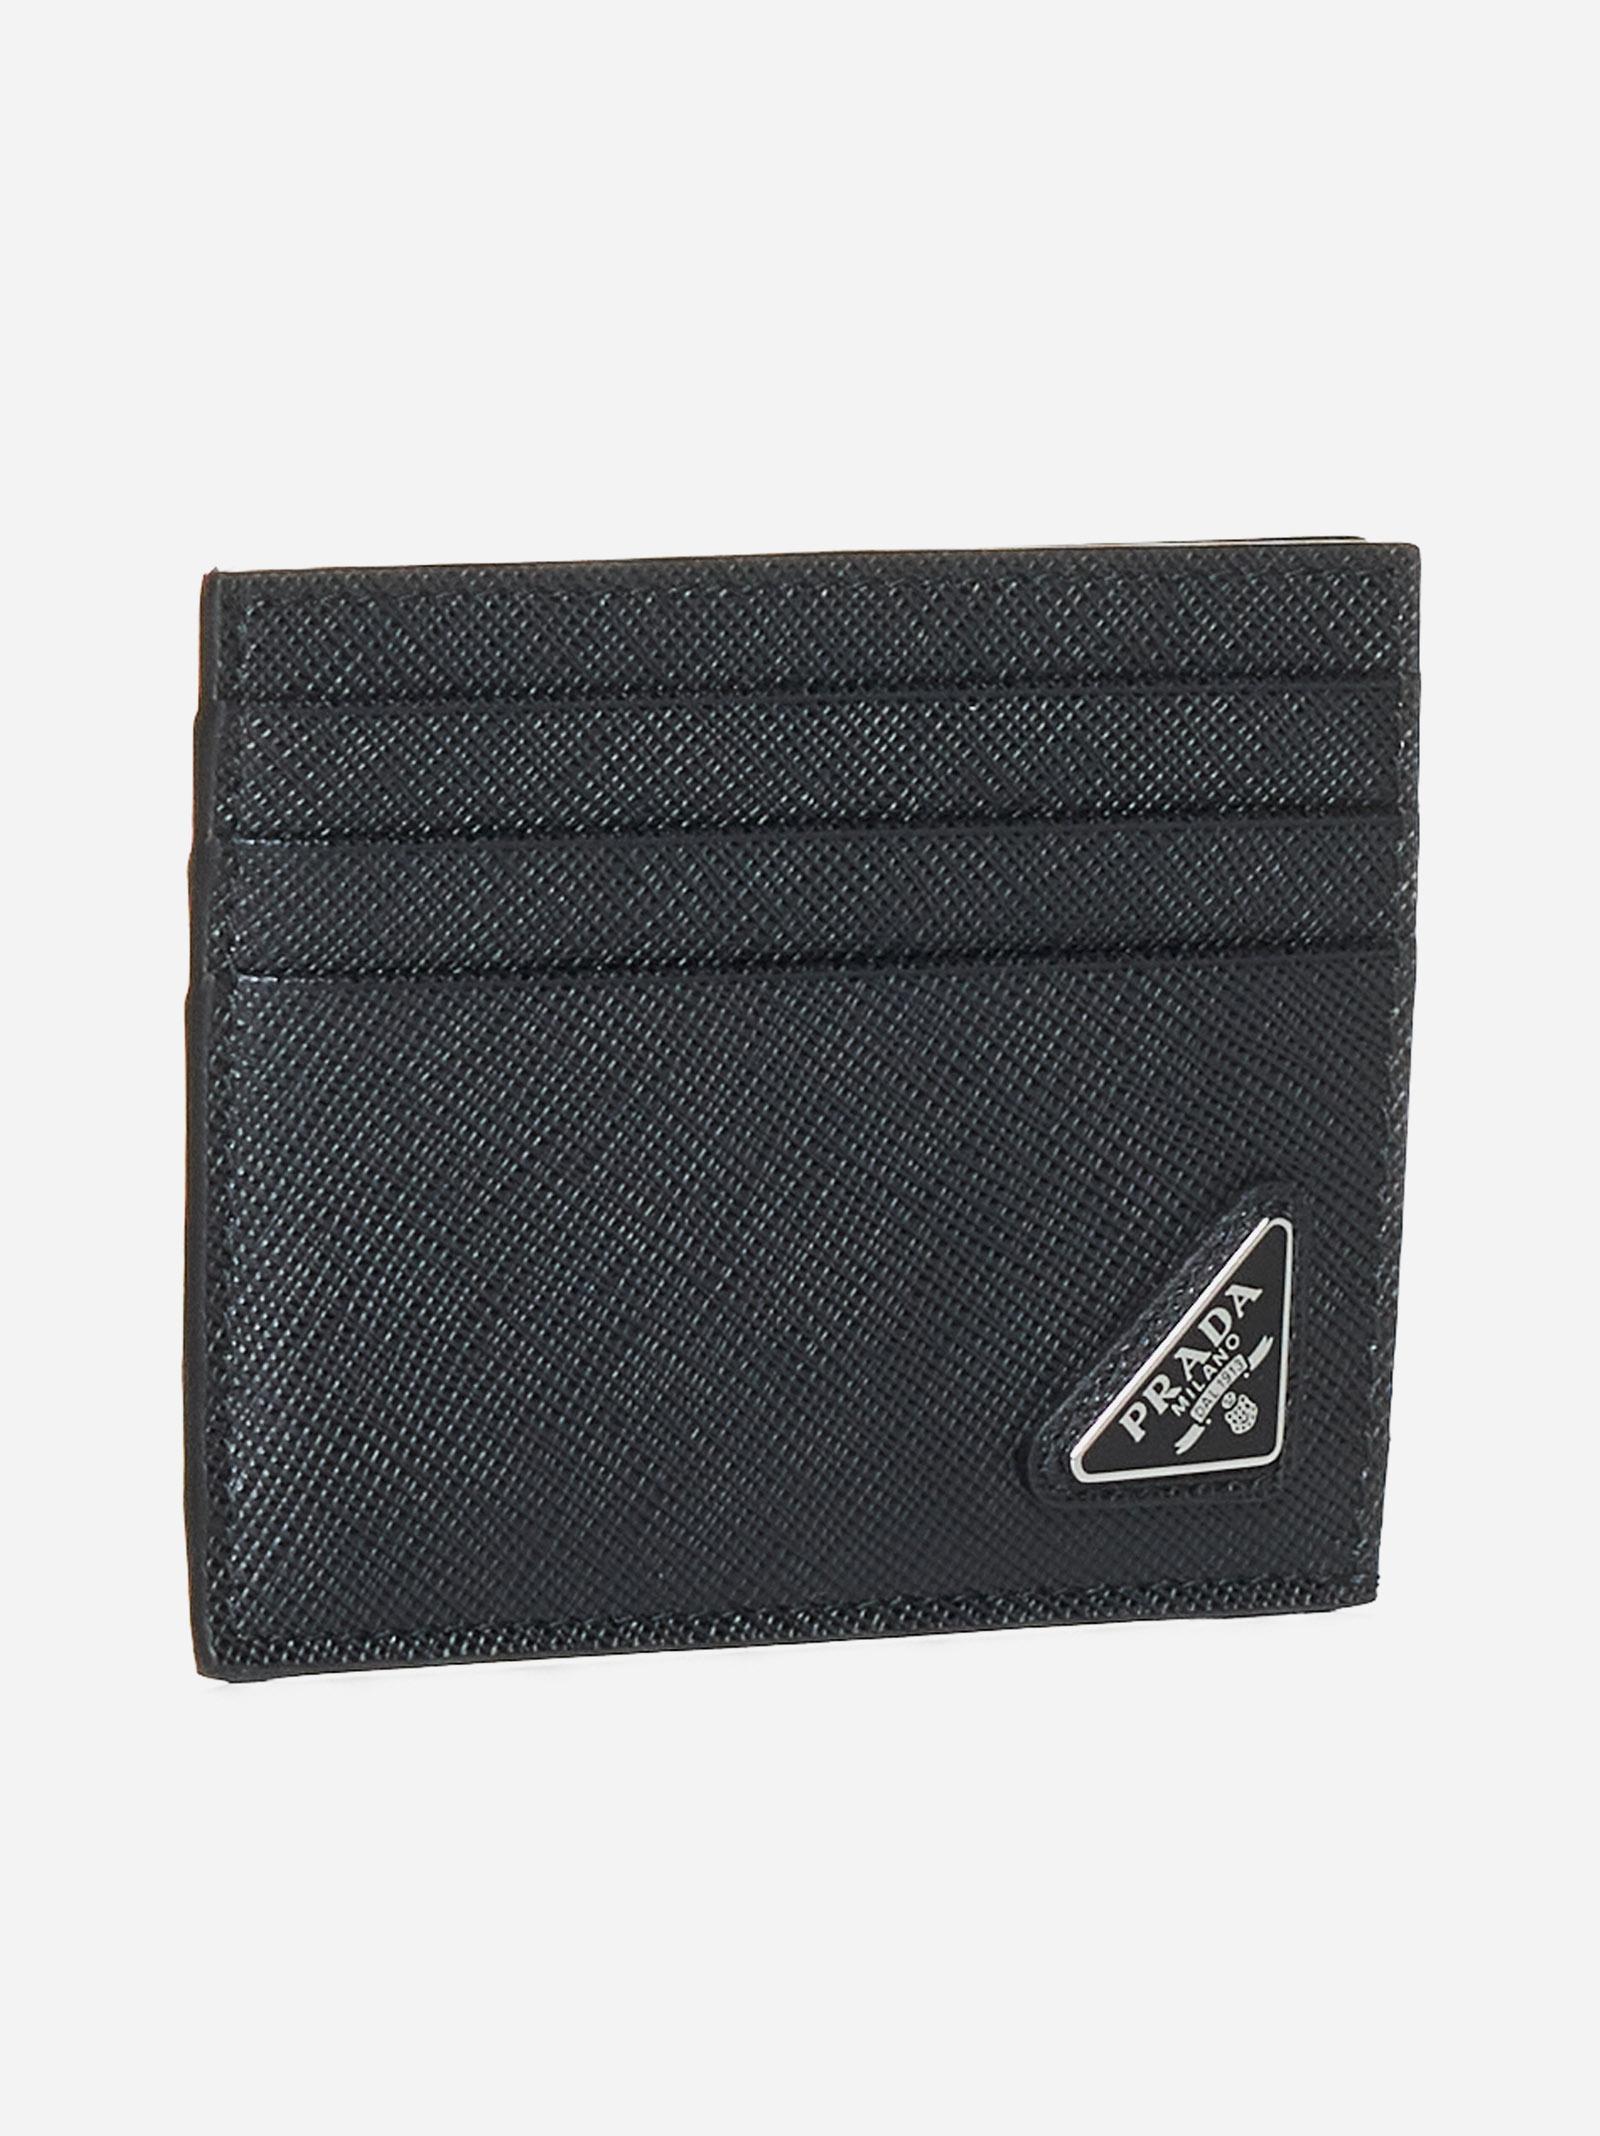 PRADA Logo-plaque saffiano leather card holder